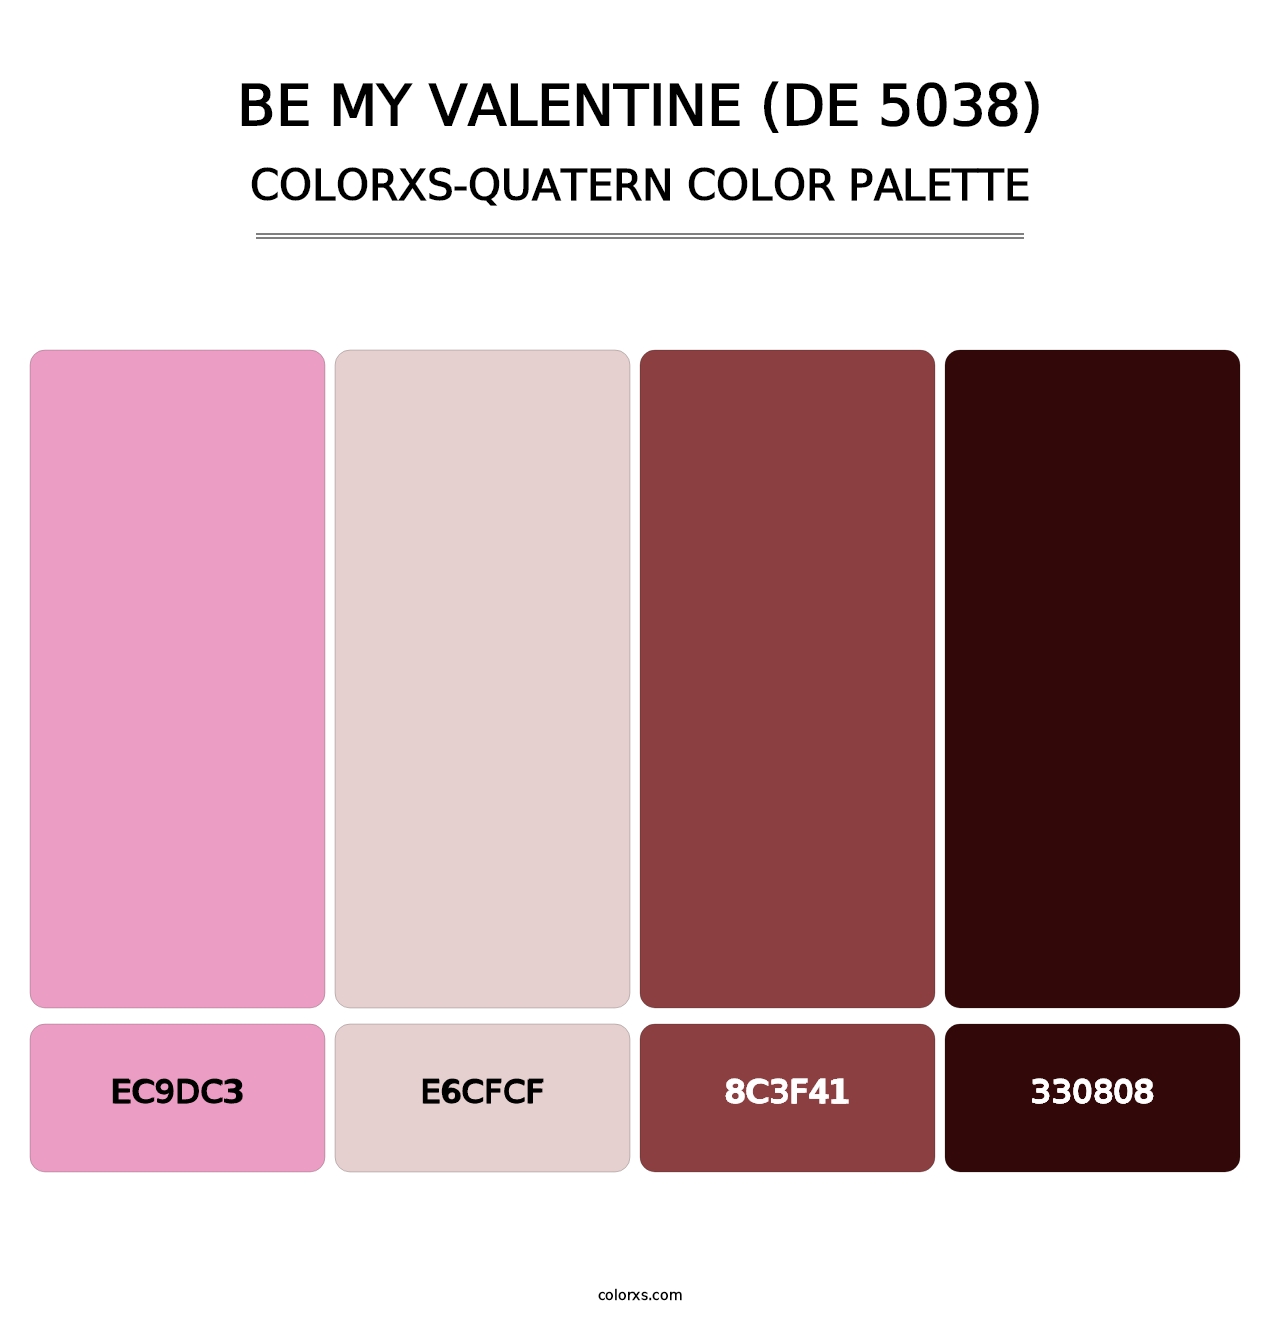 Be My Valentine (DE 5038) - Colorxs Quatern Palette